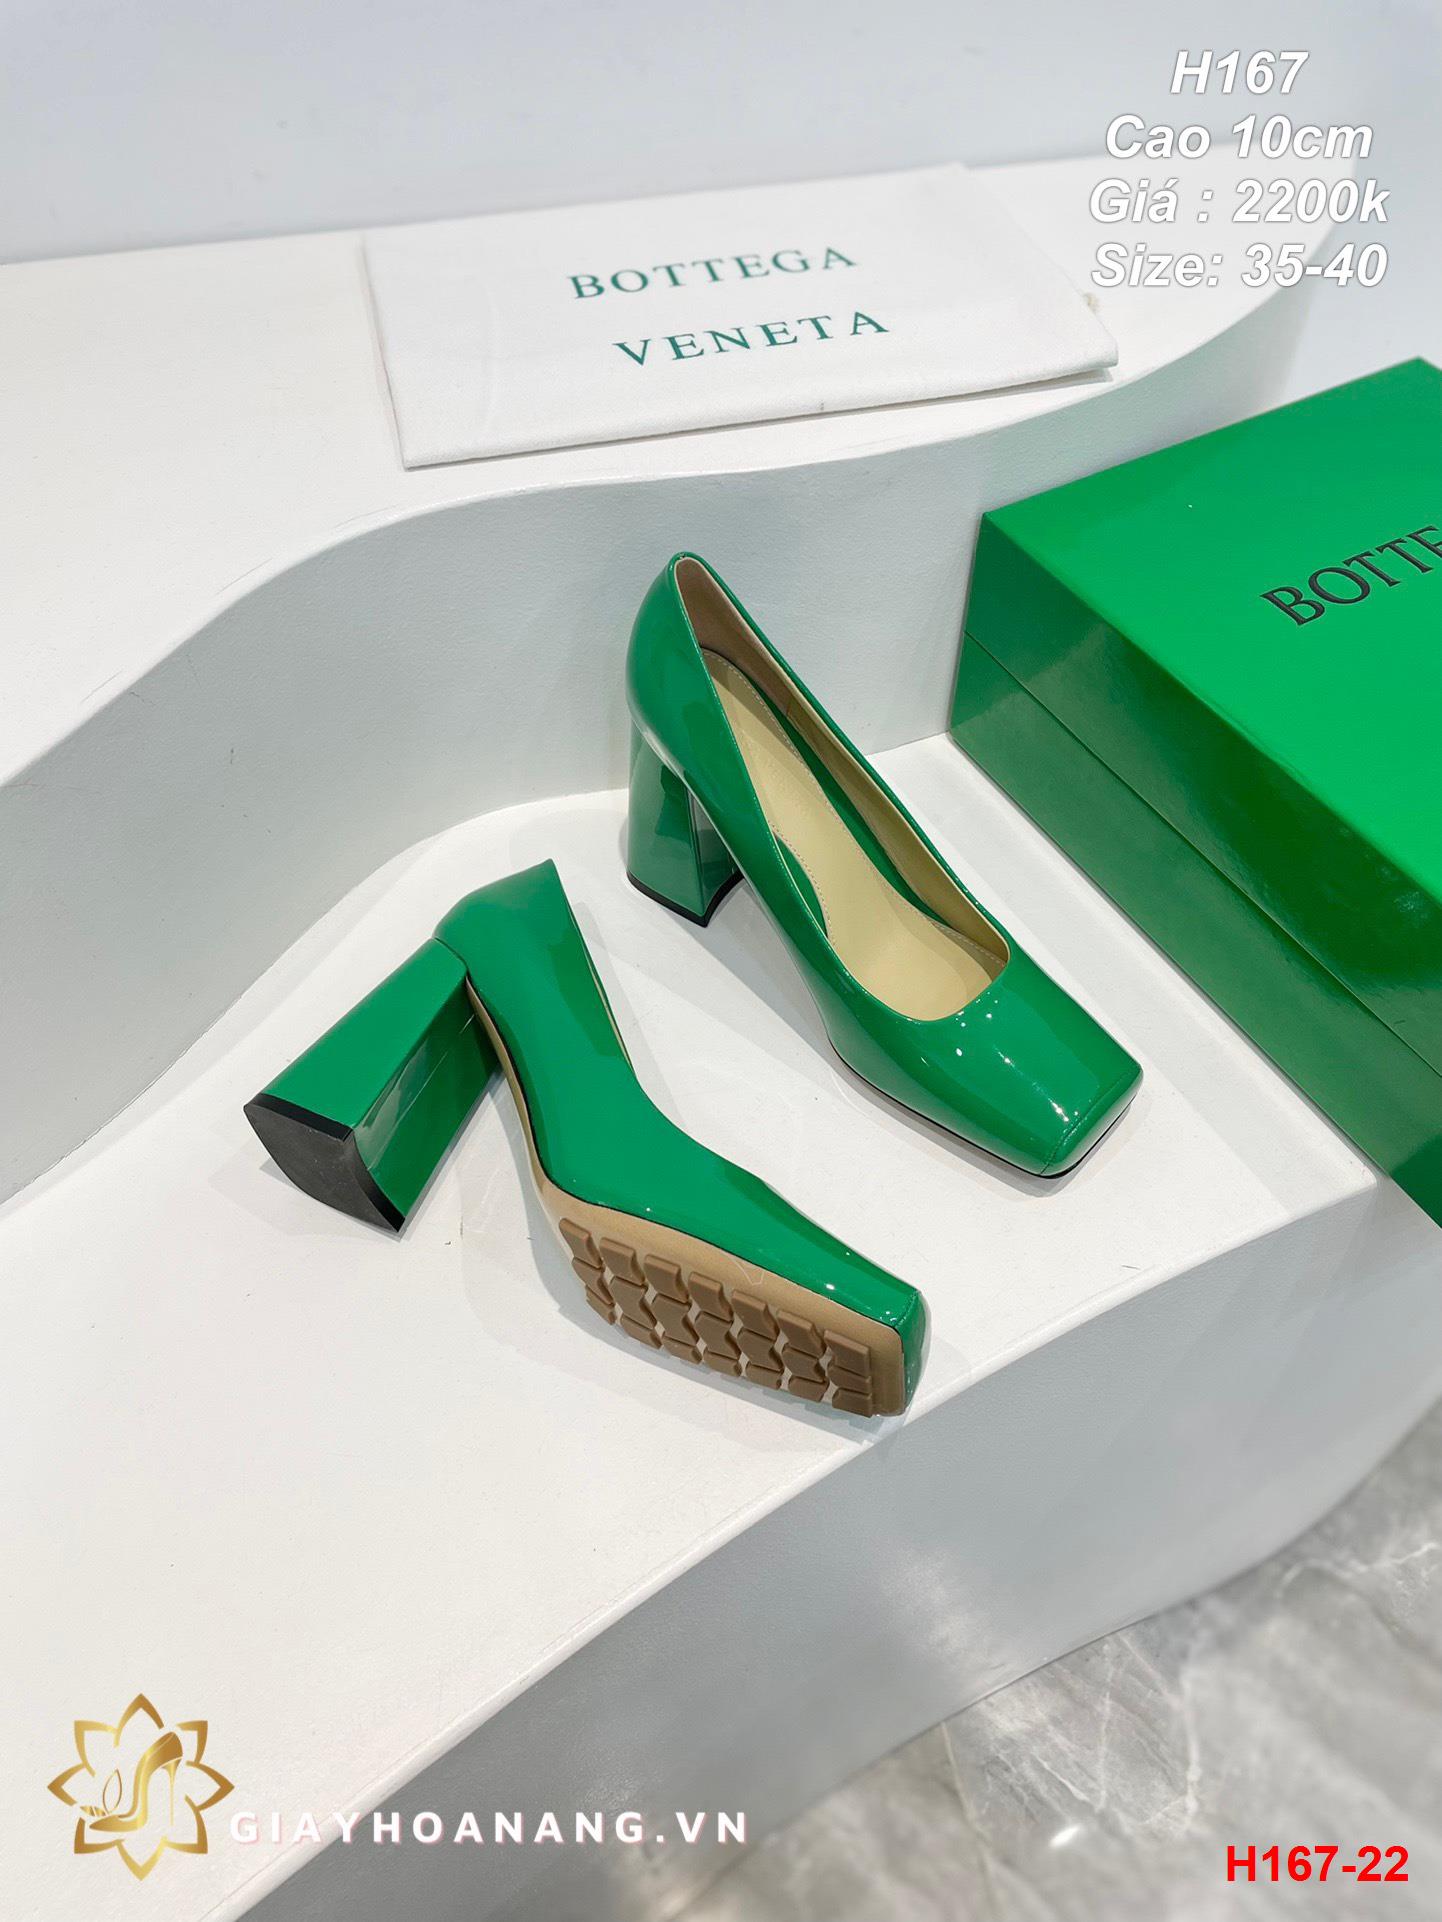 H167-22 Bottega Veneta giày cao 10cm siêu cấp